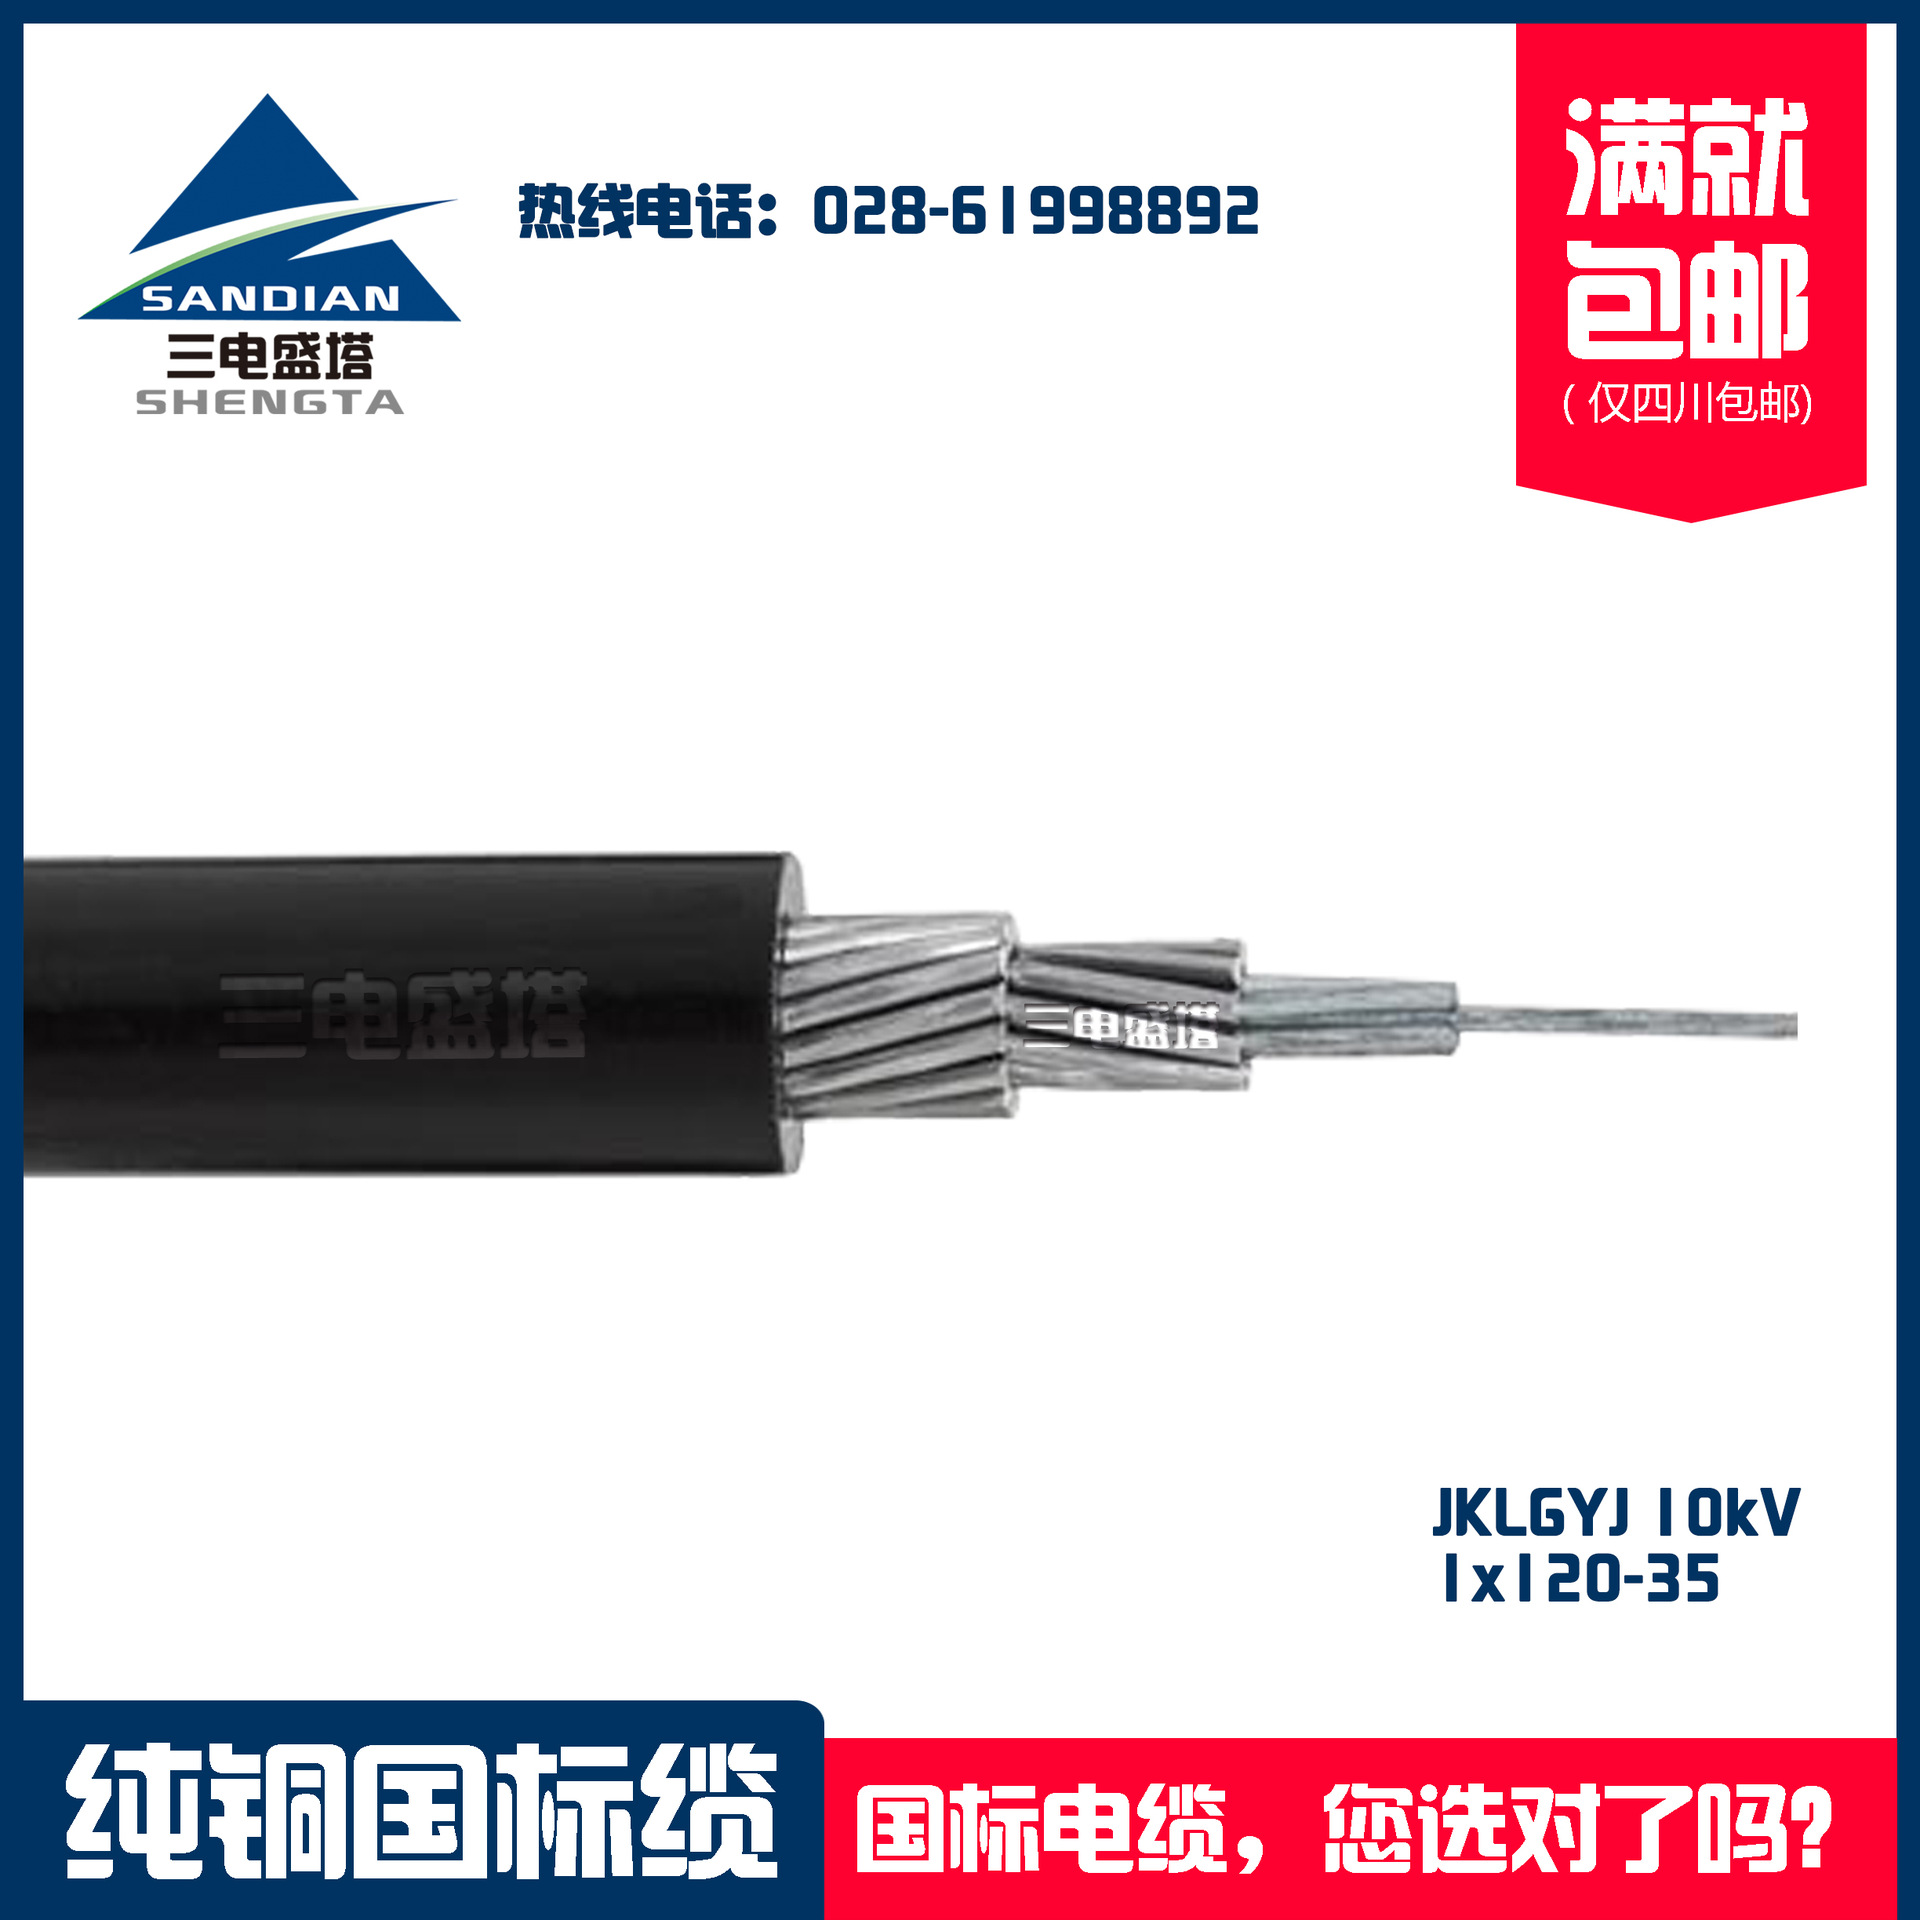 三电盛塔 高压铝芯带钢芯架空电缆 JKLGYJ 1x120-35